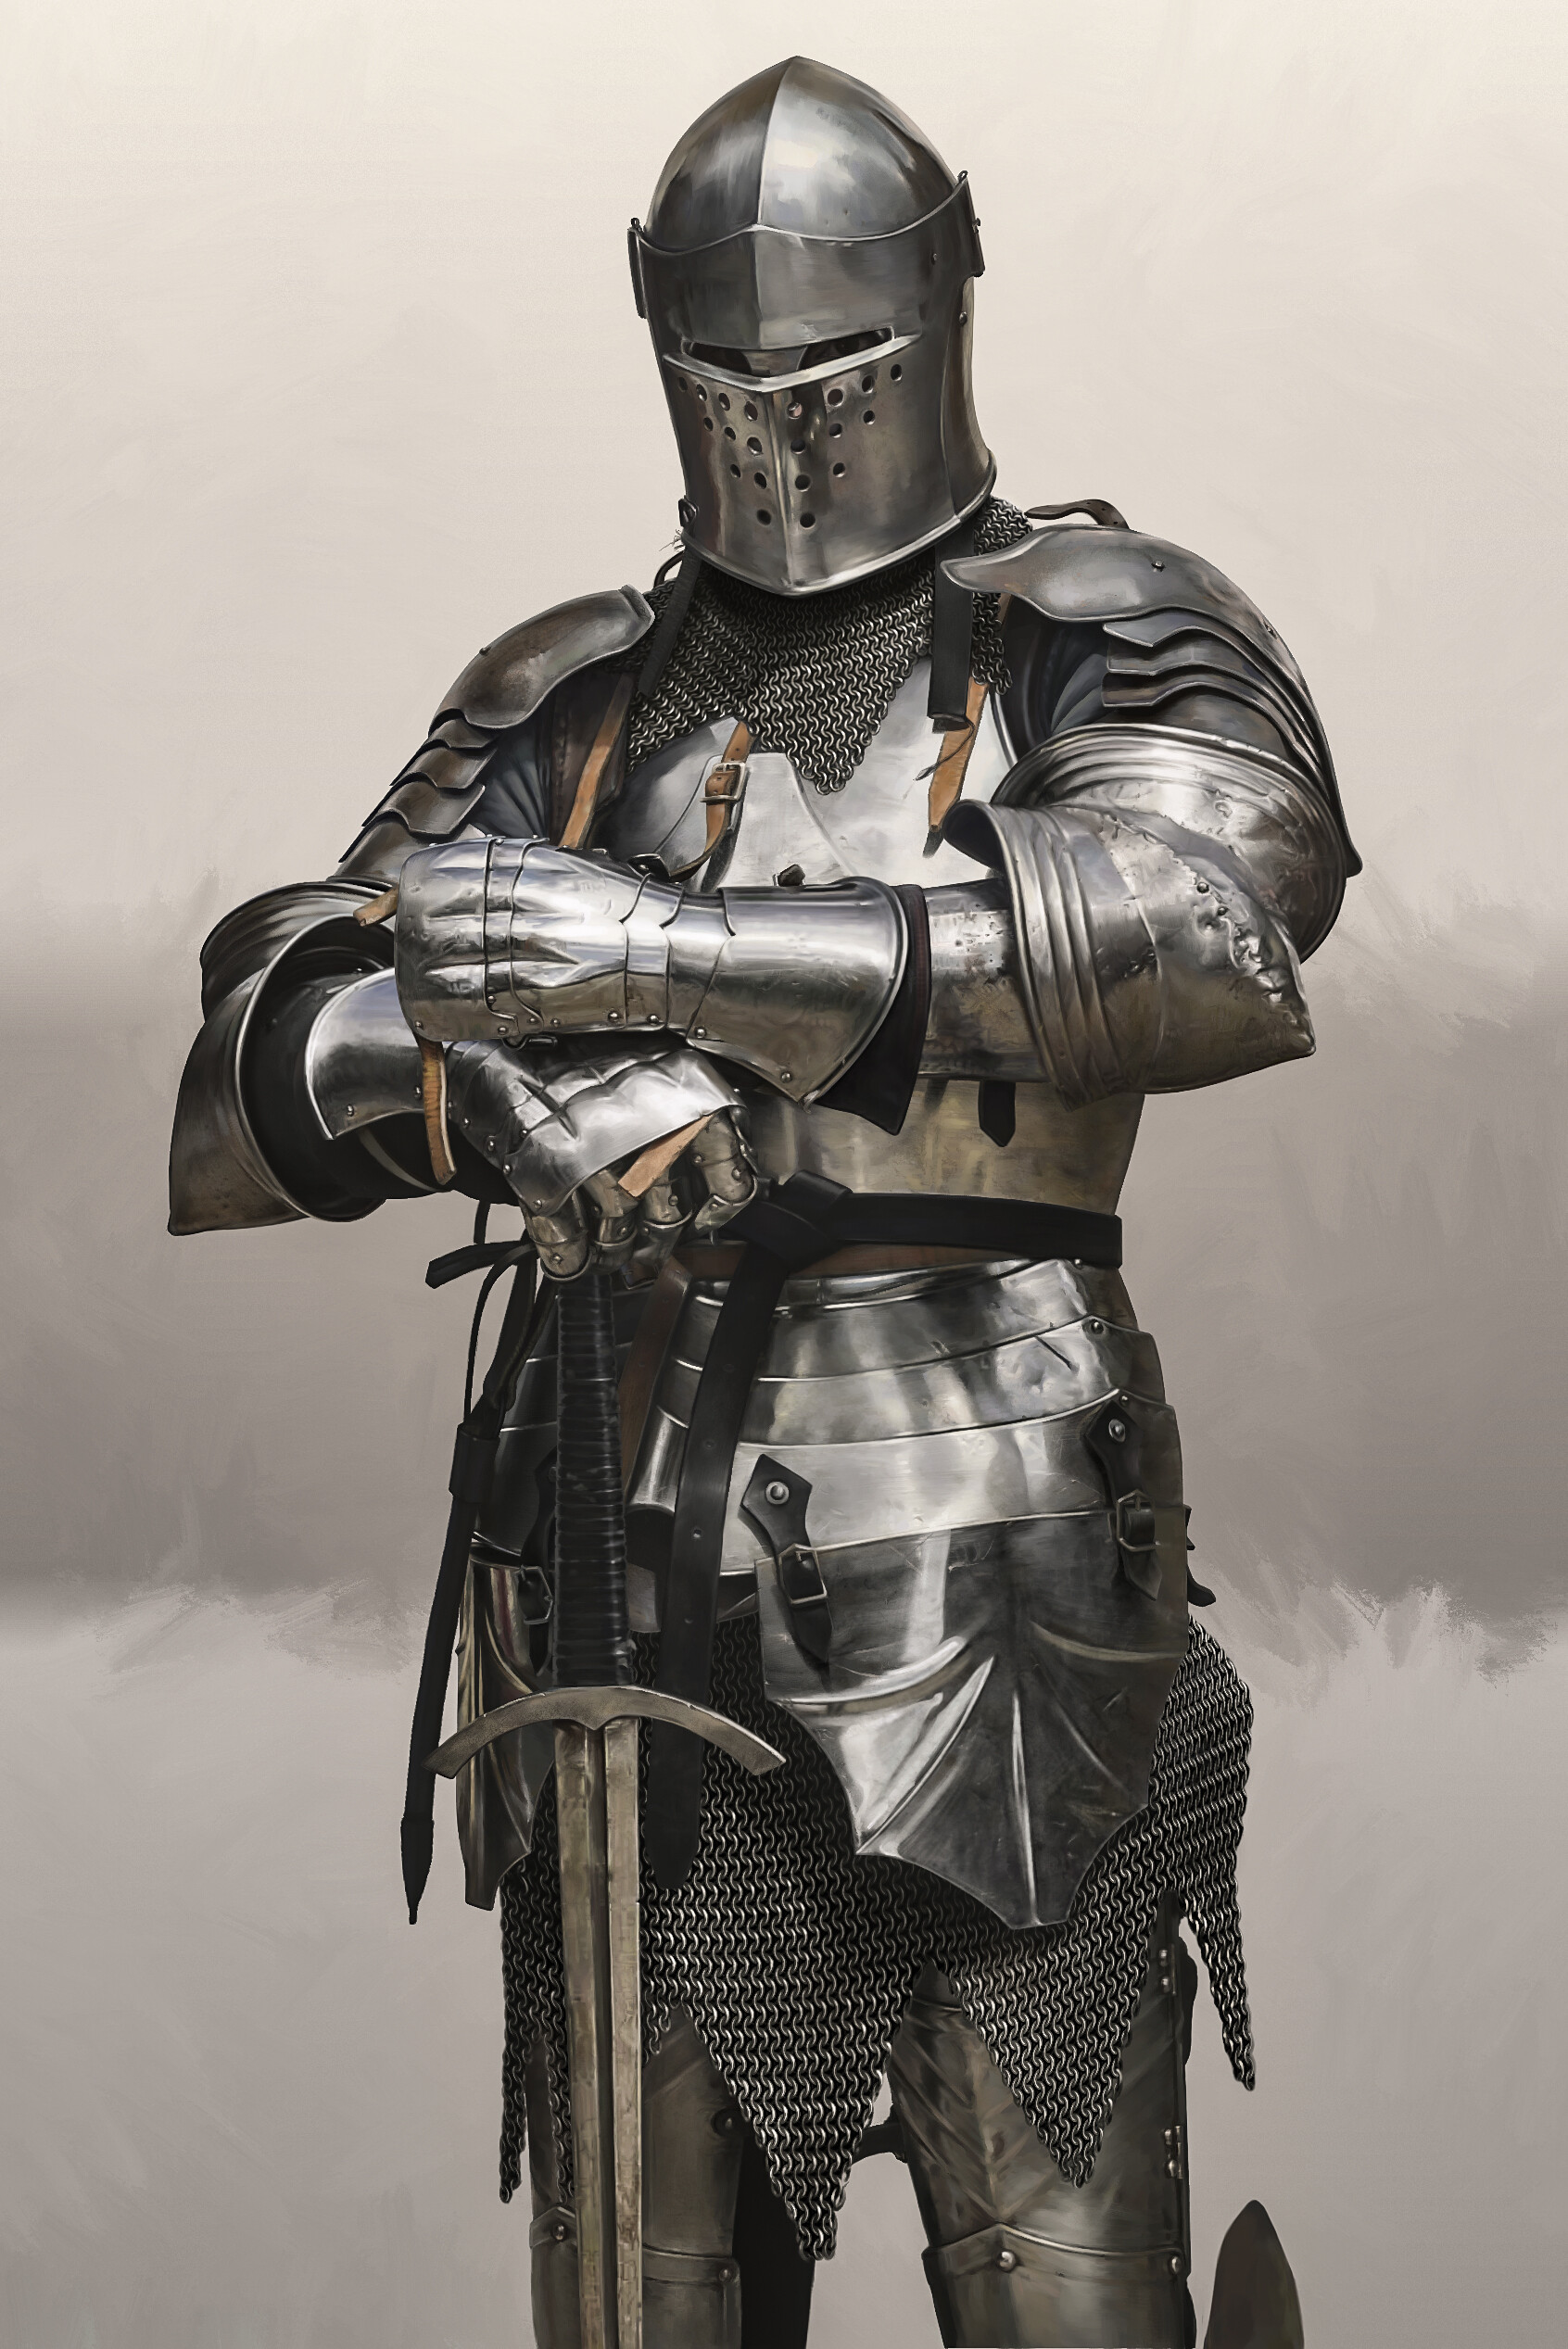 General 1692x2535 armor knight medieval helmet gauntlets cuirass greaves sword european men artwork portrait display